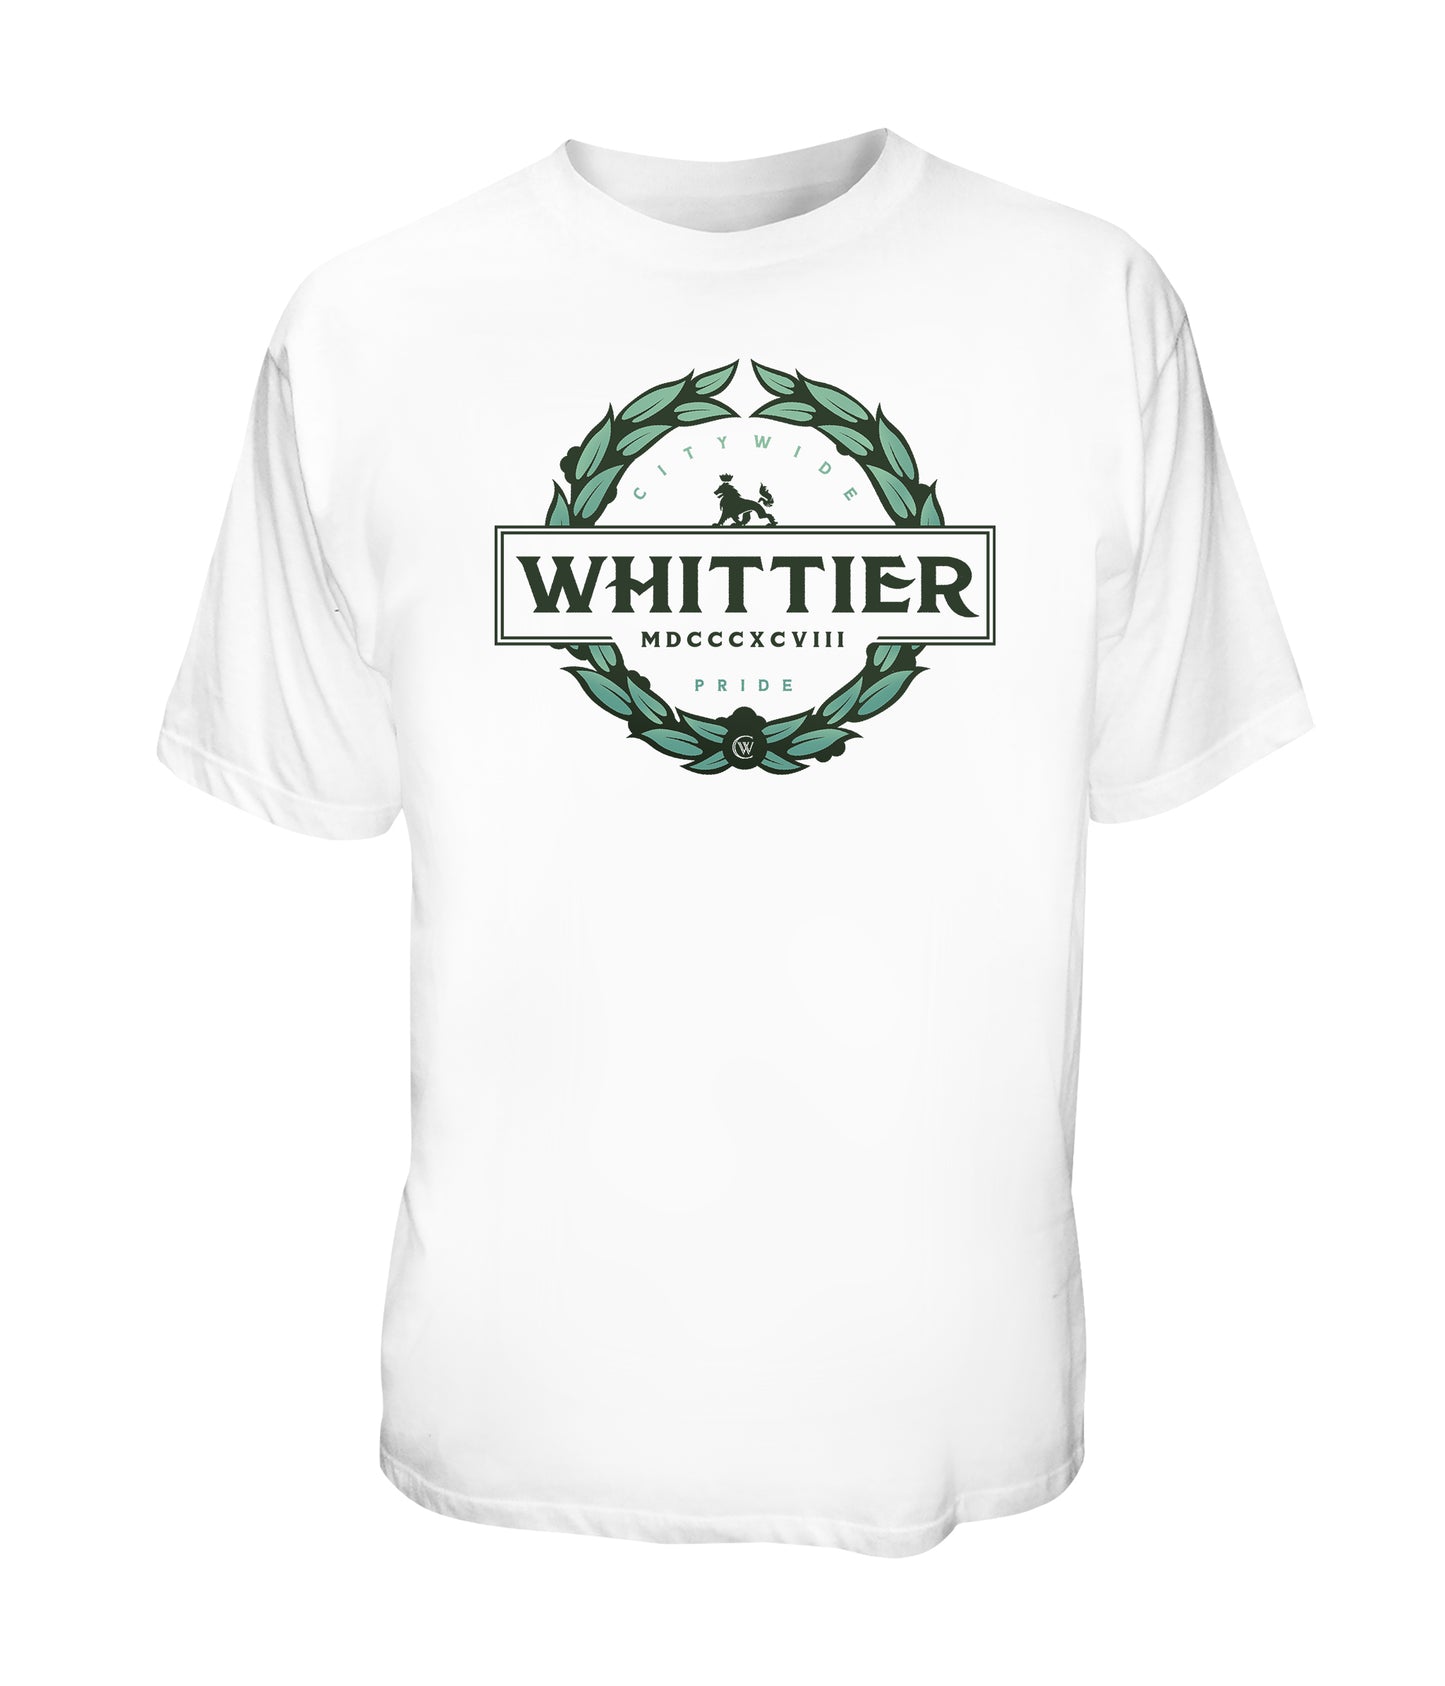 Whittier The Pride